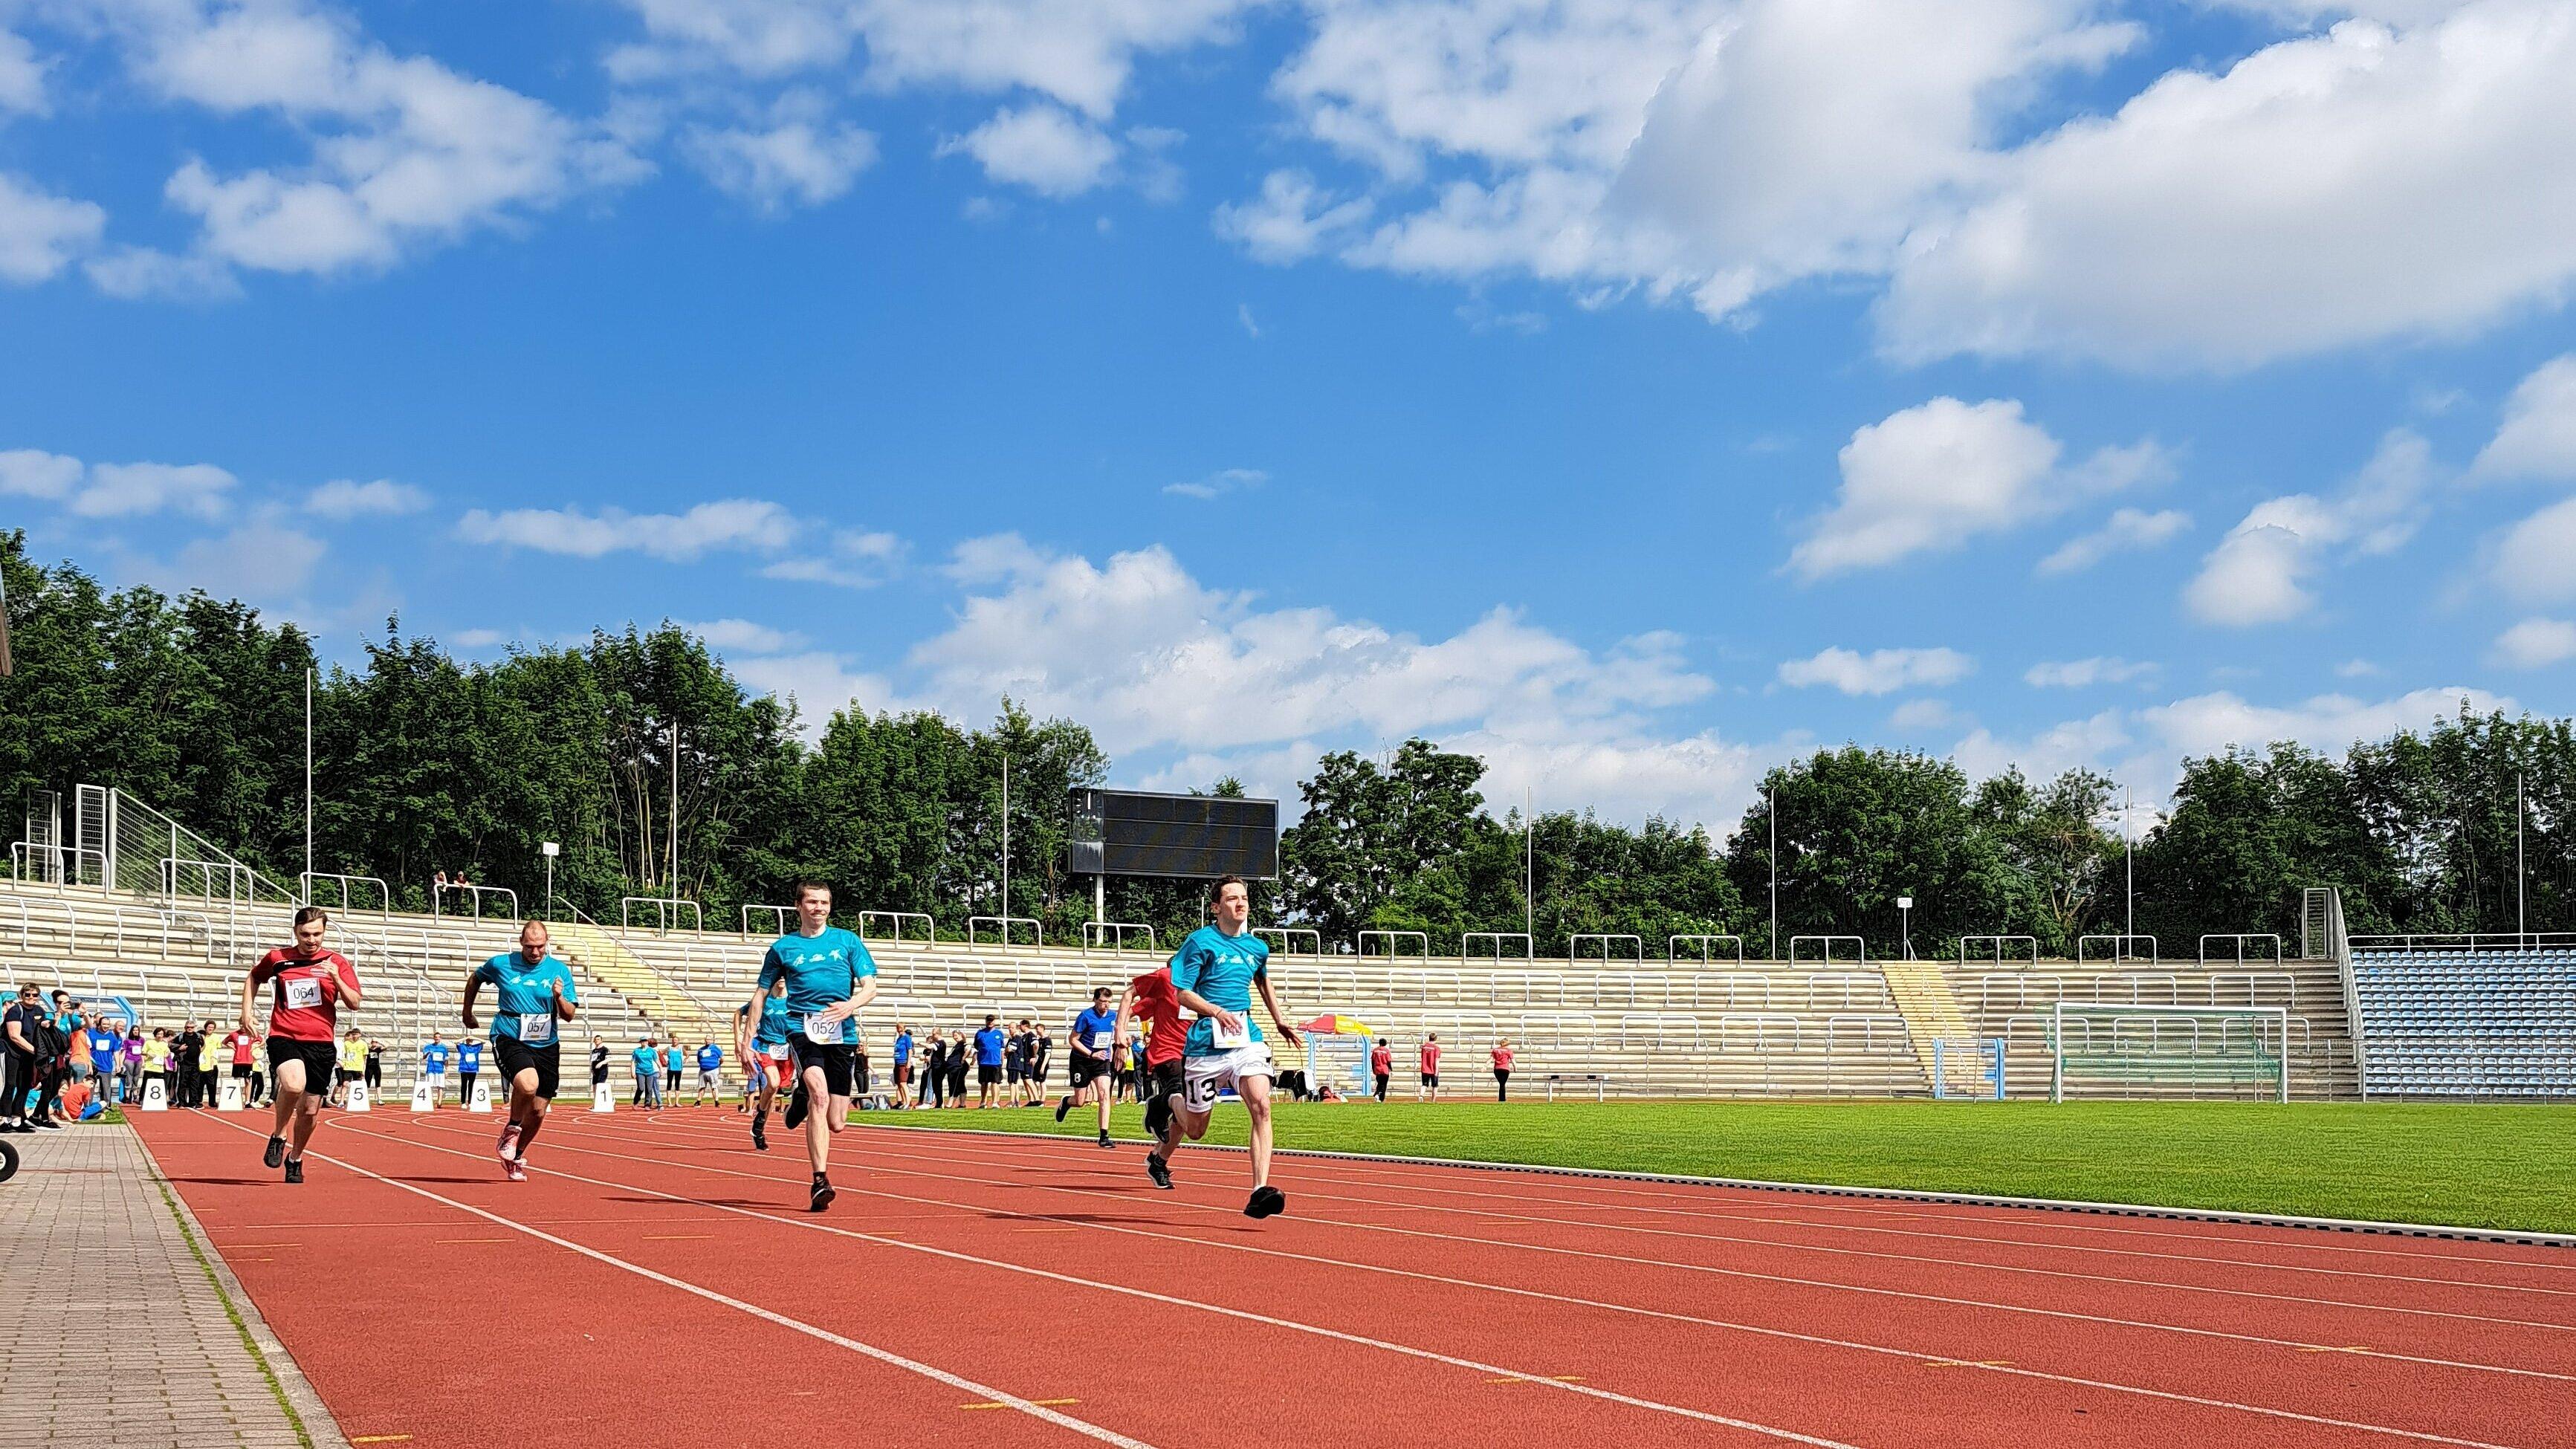 Mehrere Athleten sprinten auf einer Laufstrecke im Stadion